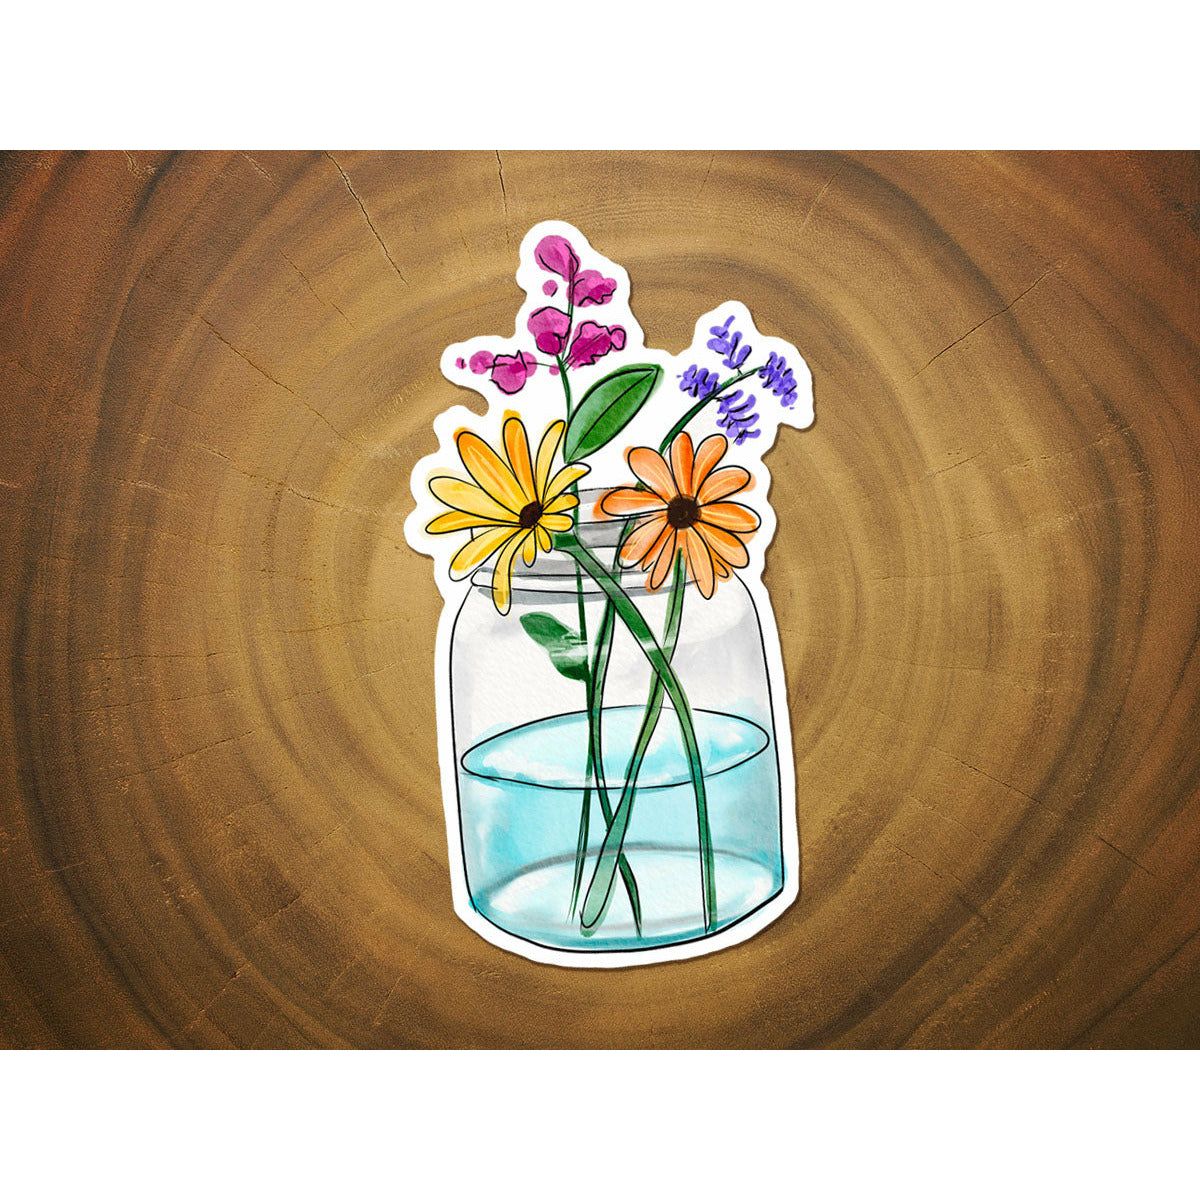 Wildflowers in a Jar | Vinyl Art Sticker